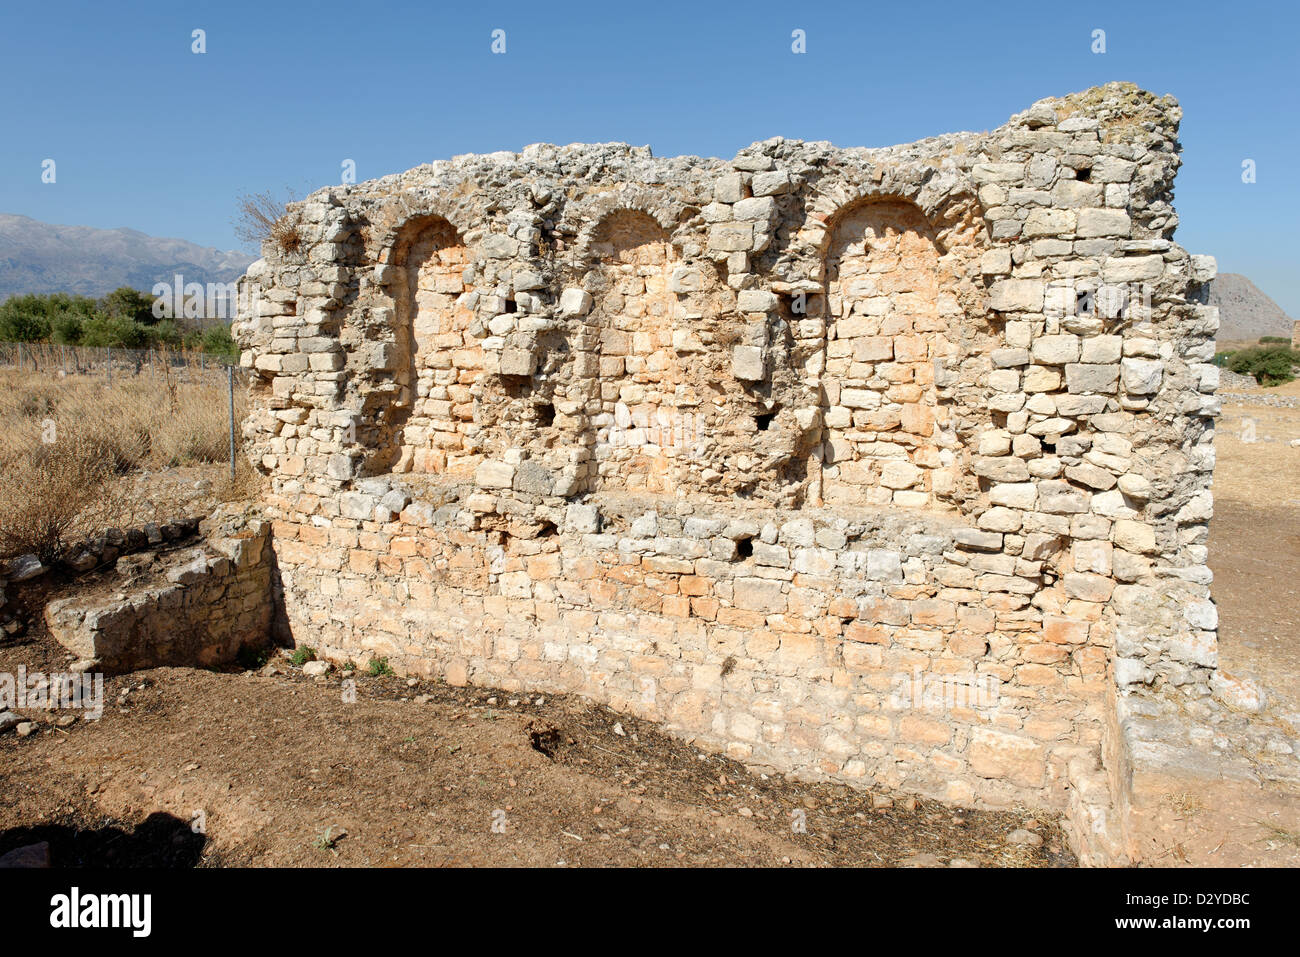 Aptera. Creta. La Grecia. Roman edificio pubblico con nicchie risalenti al periodo romano del I secolo A.C. - IV secolo d.c. Foto Stock